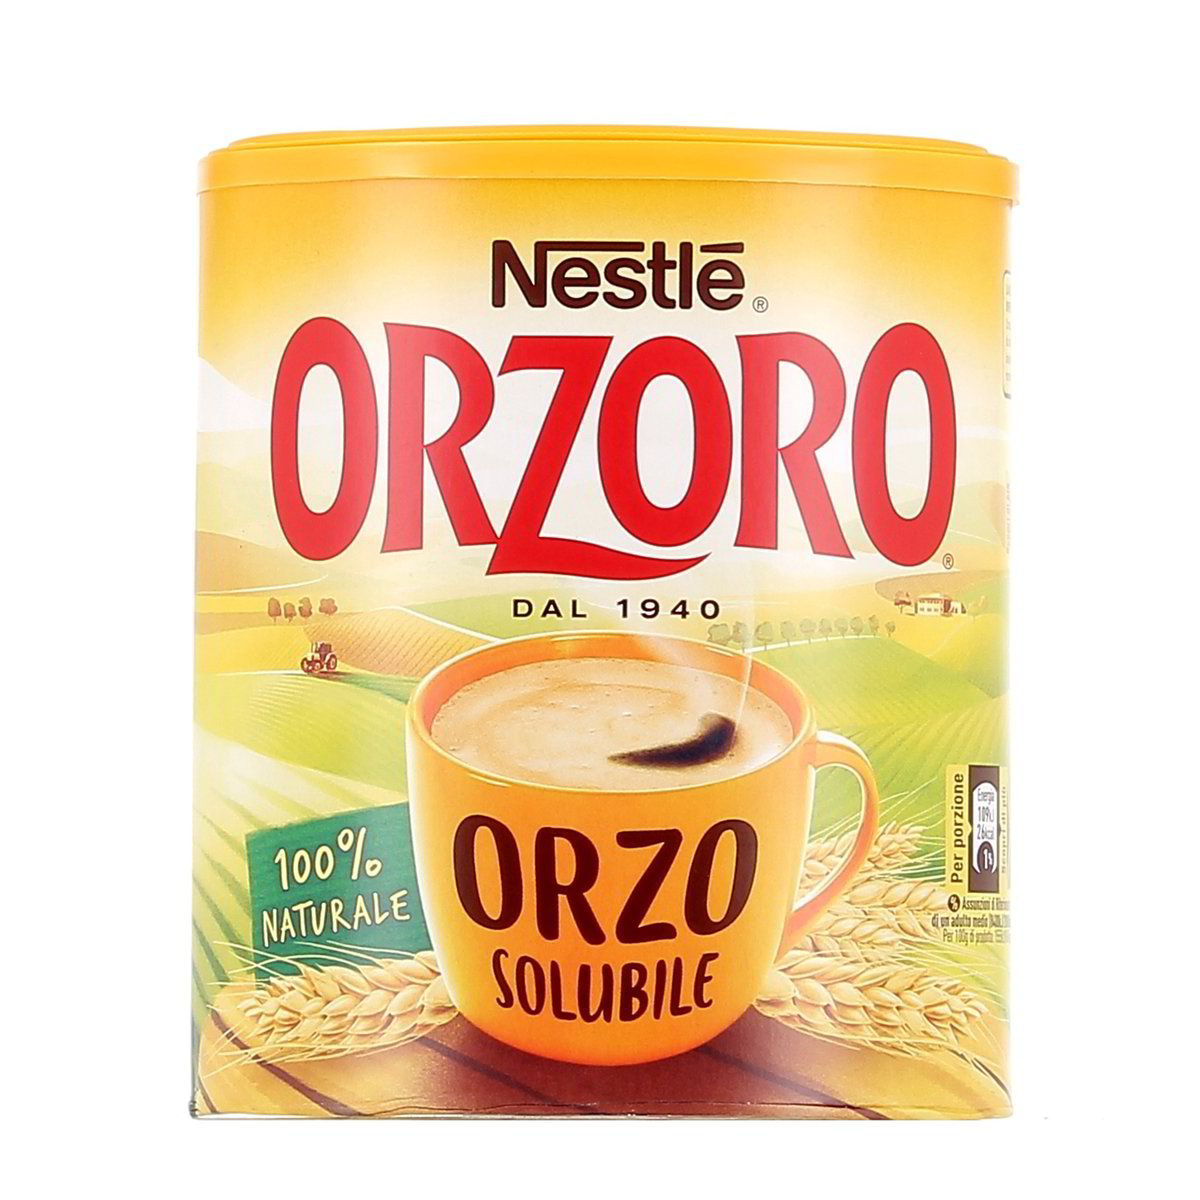 ORZO SOLUBILE NESTLE 120 g in dettaglio